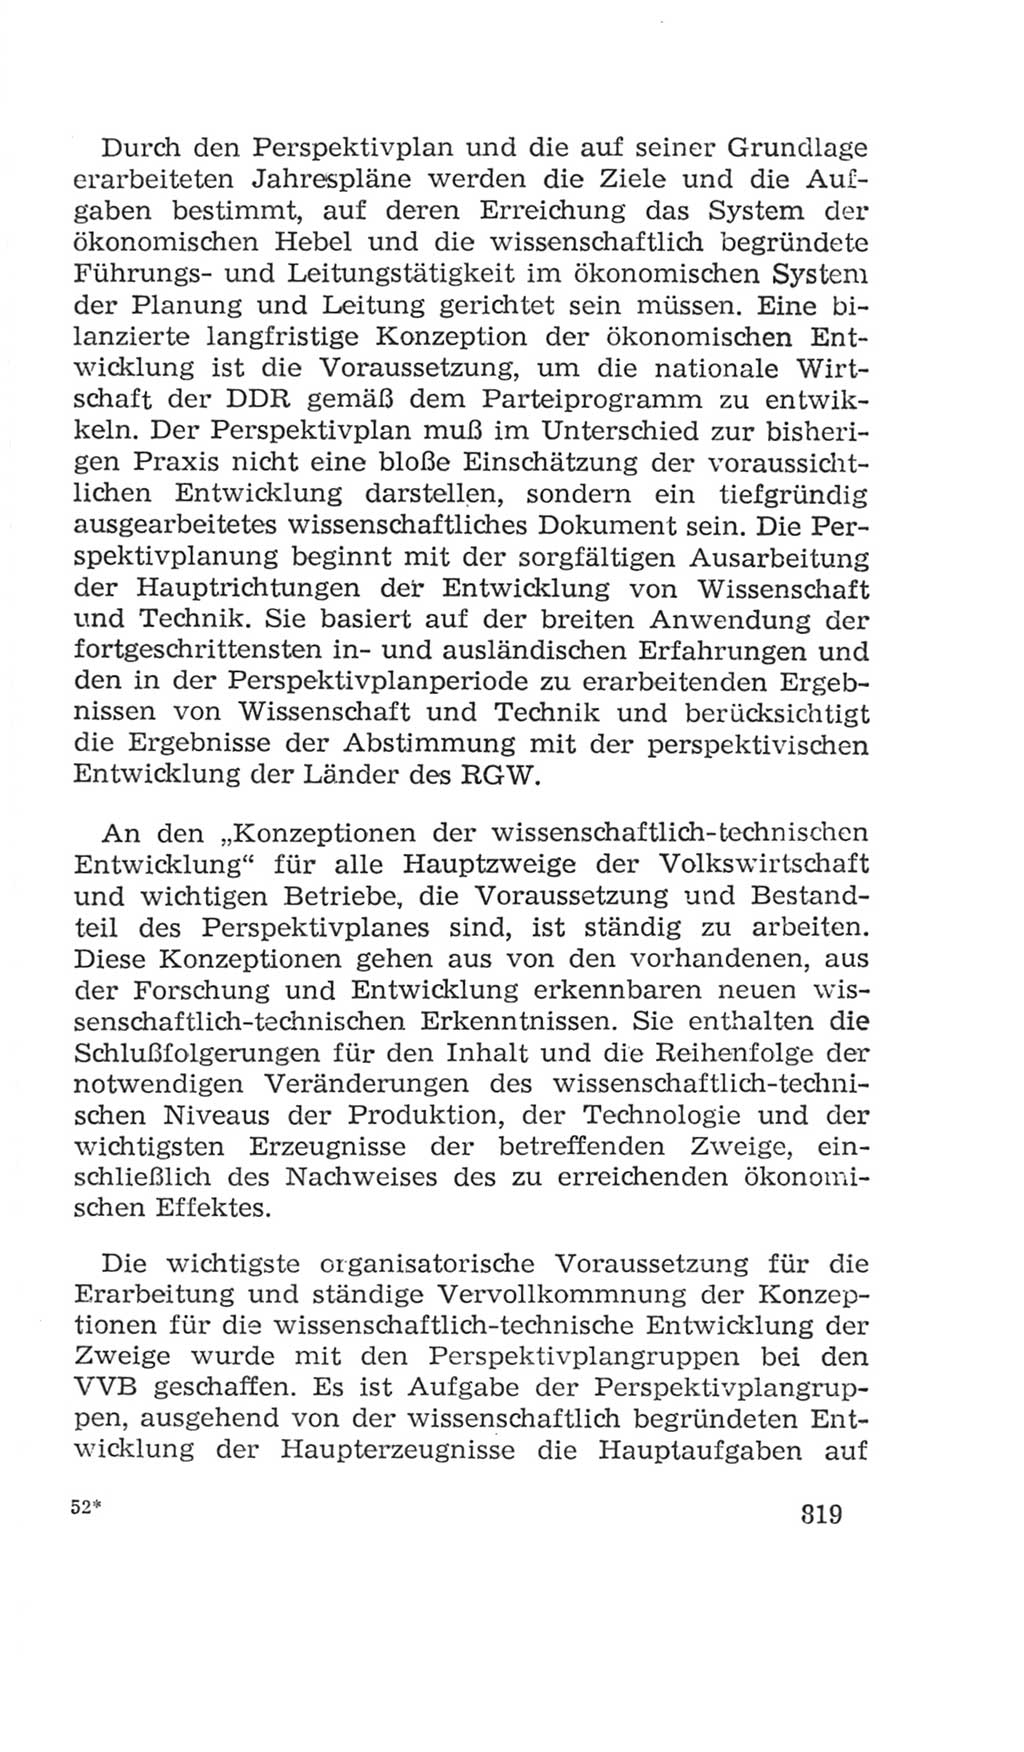 Volkskammer (VK) der Deutschen Demokratischen Republik (DDR), 4. Wahlperiode 1963-1967, Seite 819 (VK. DDR 4. WP. 1963-1967, S. 819)